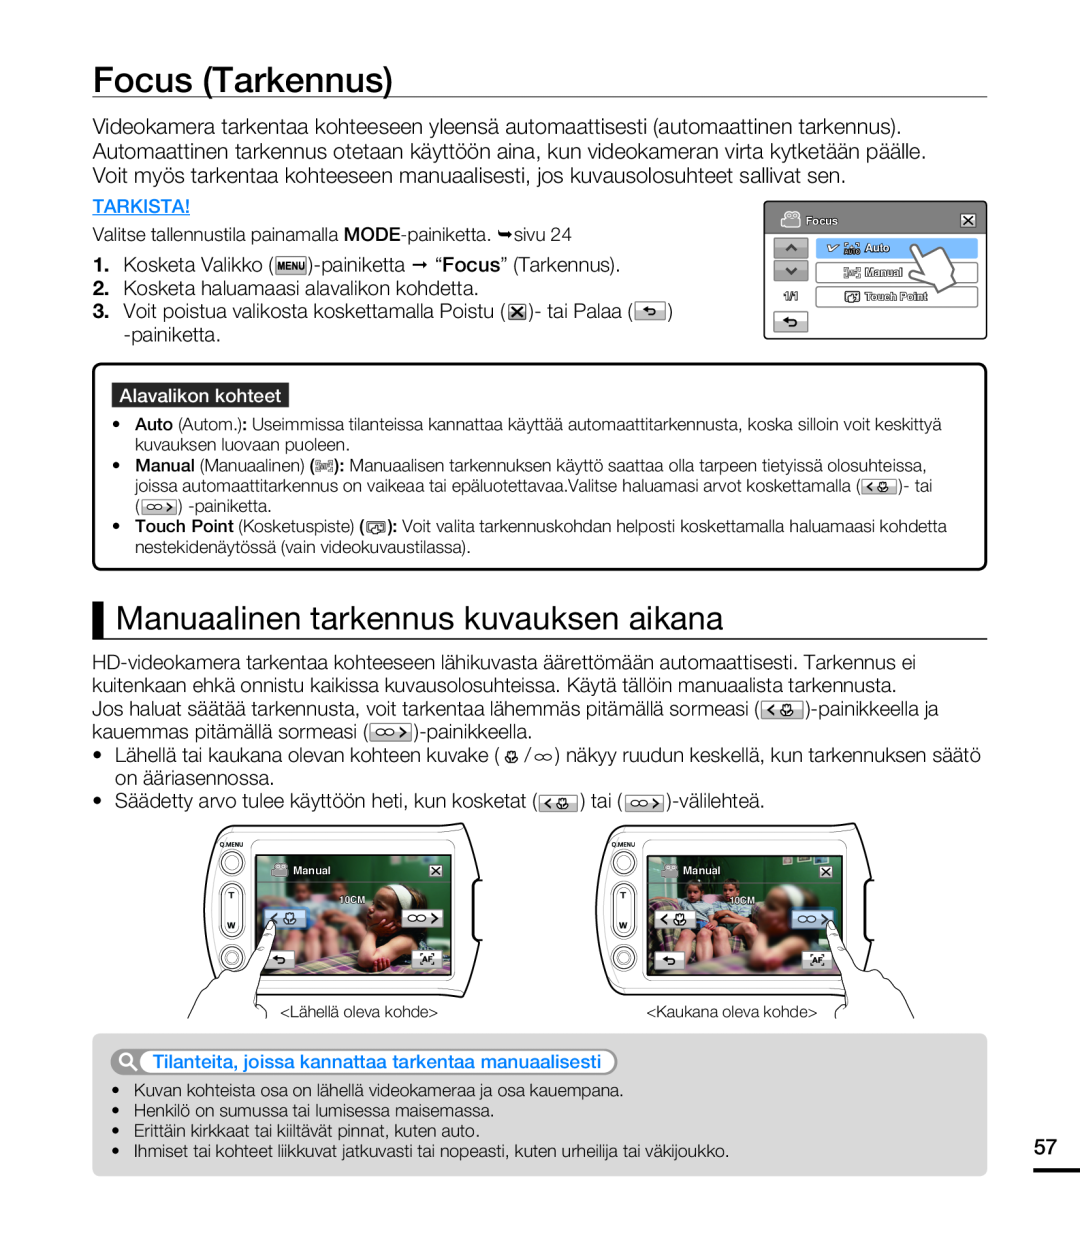 Samsung HMX-T10BP/EDC, HMX-T10WP/EDC manual Focus Tarkennus, Manuaalinen tarkennus kuvauksen aikana 